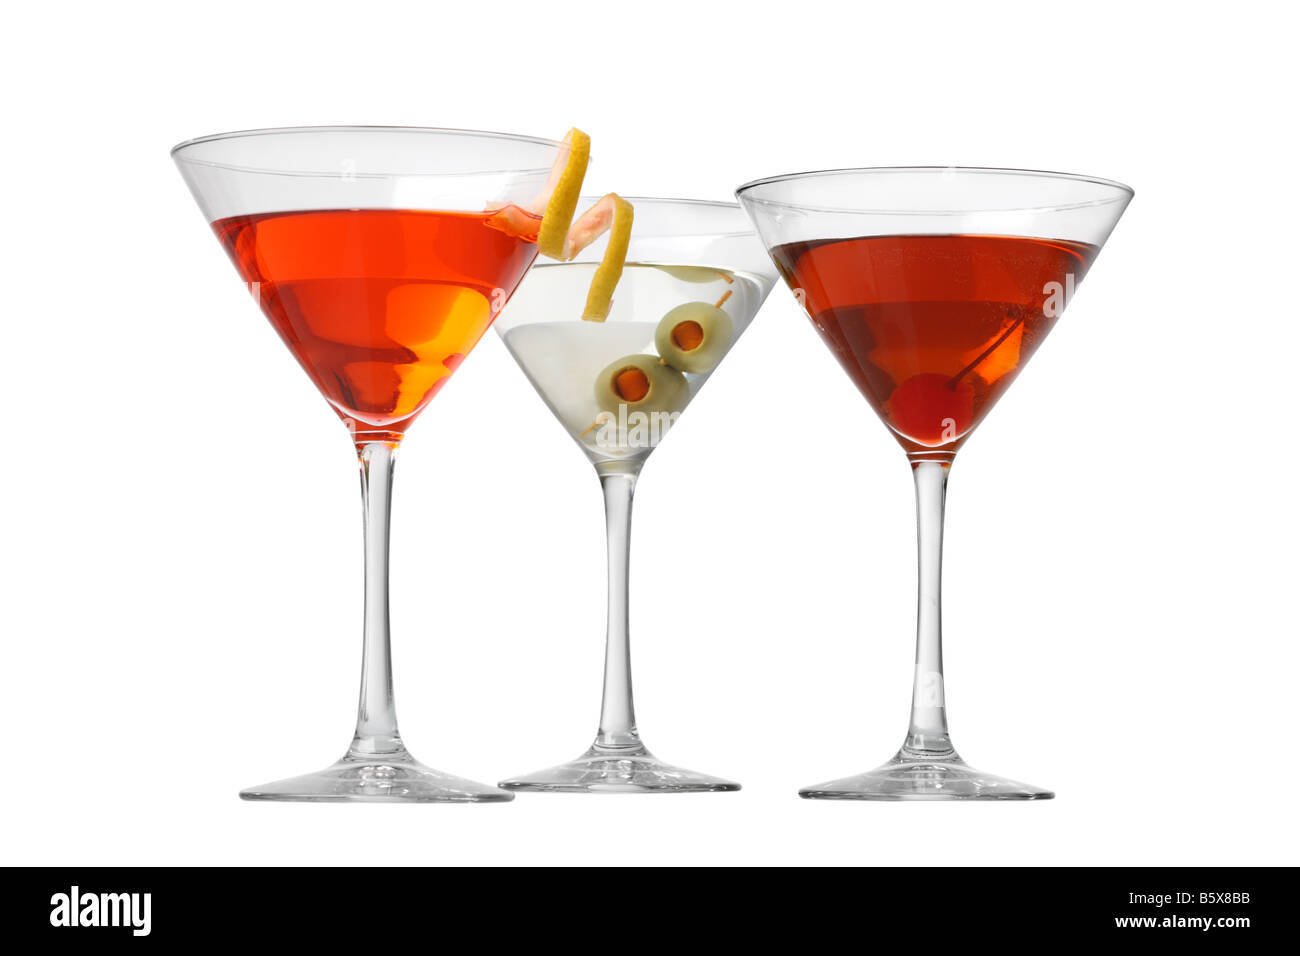 Manhattan kosmopolitischen Martini Cocktails Ausschnitt isoliert auf weißem Hintergrund Stockfoto